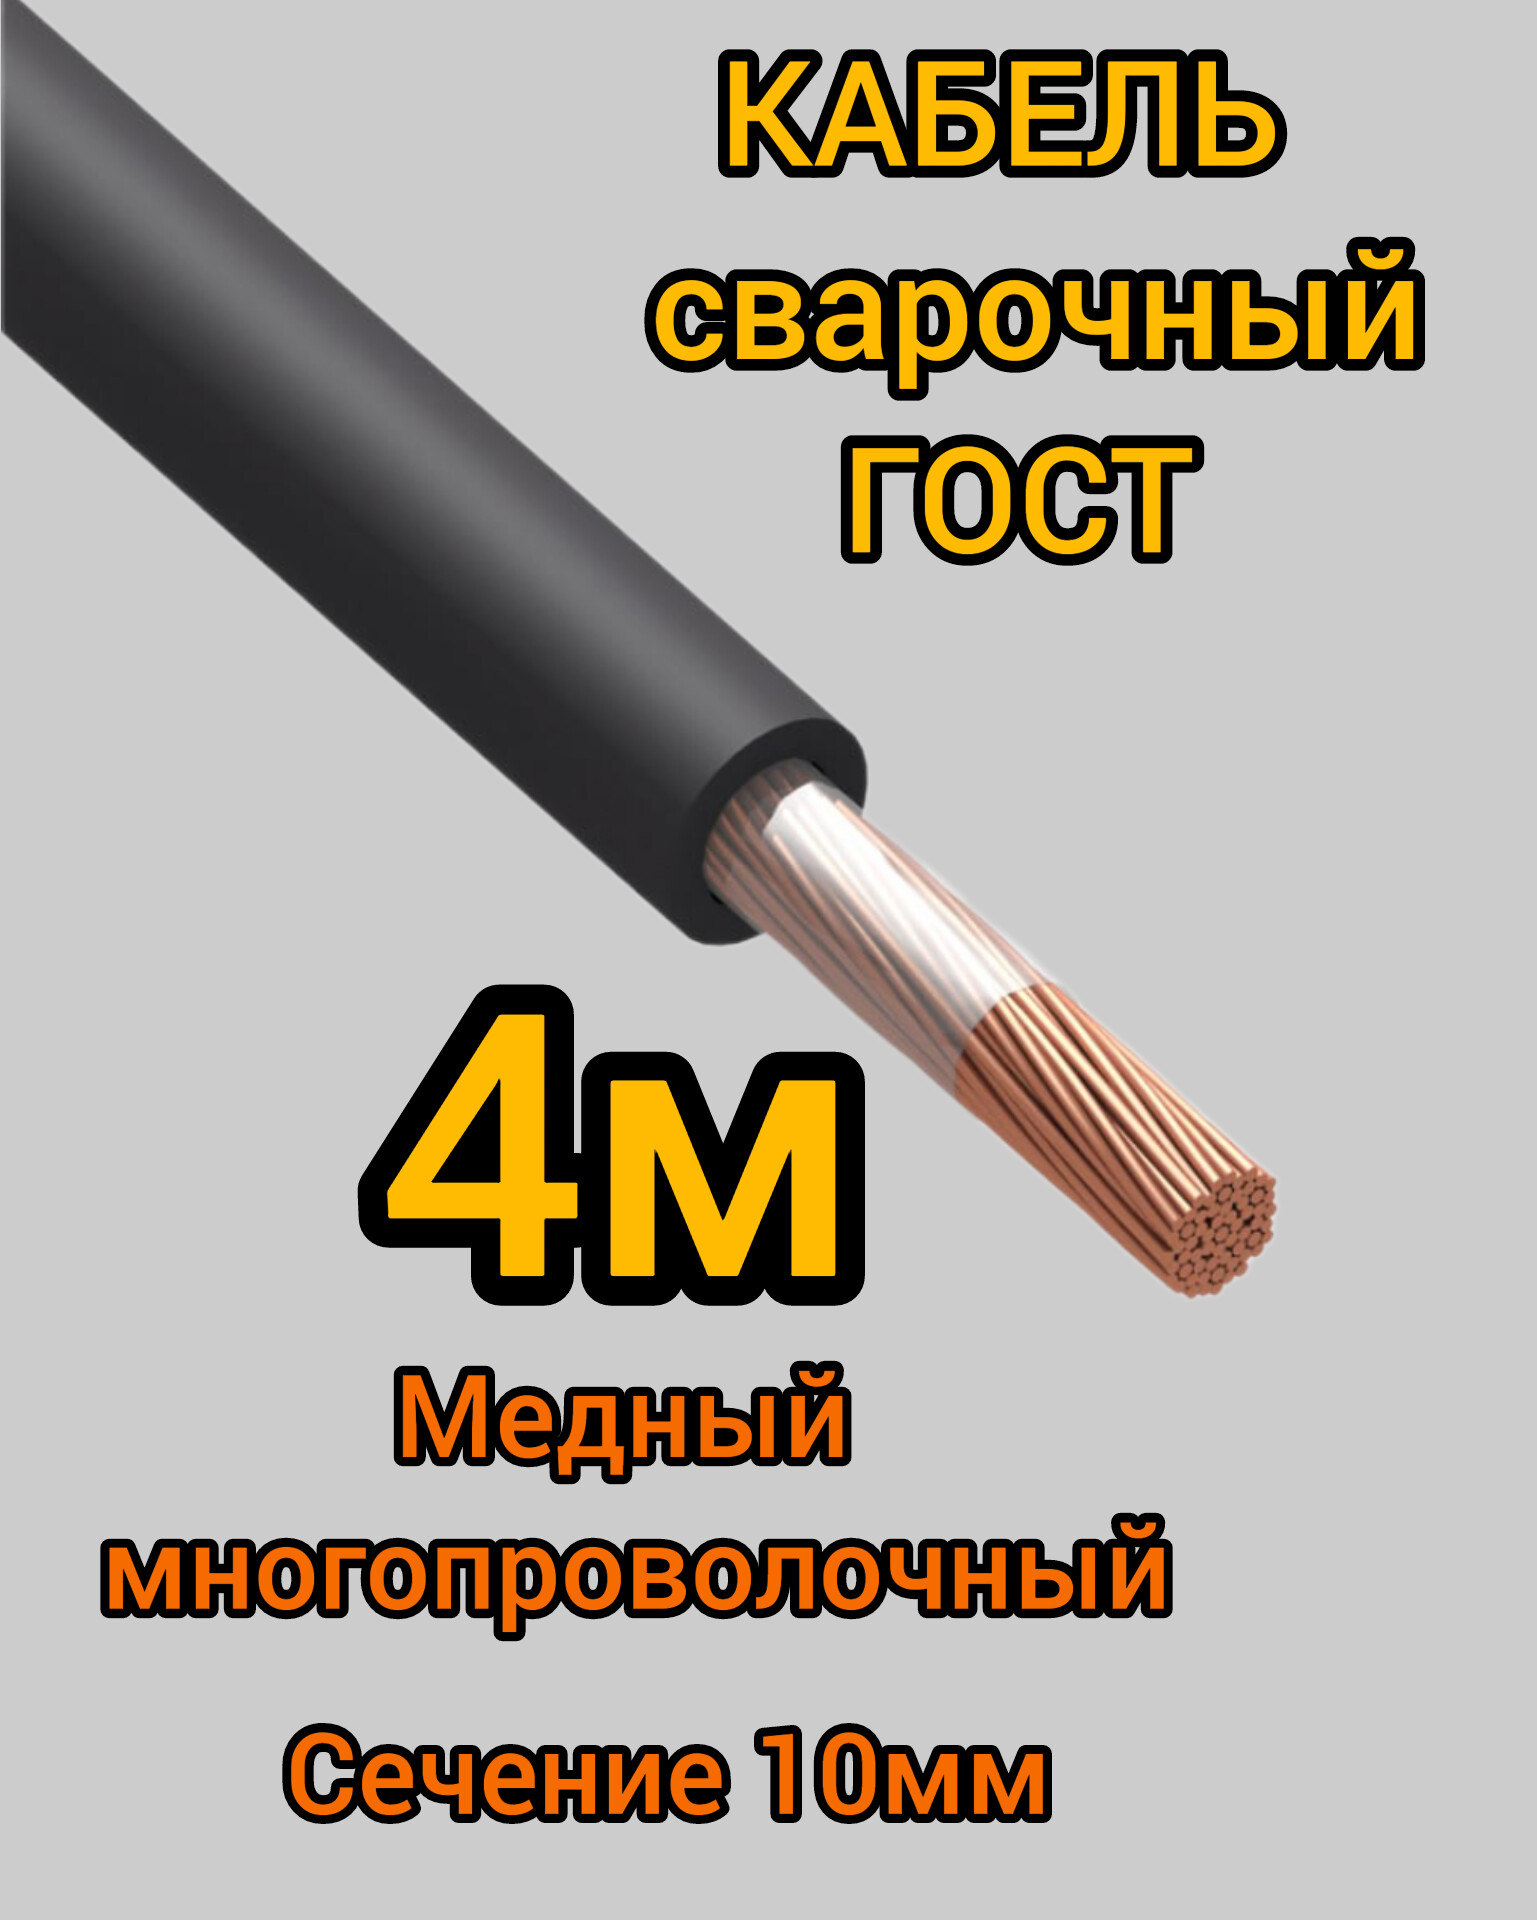 Кабель сварочный медный гибкий КГ Профессионал d10mm ГОСТ 4 метра